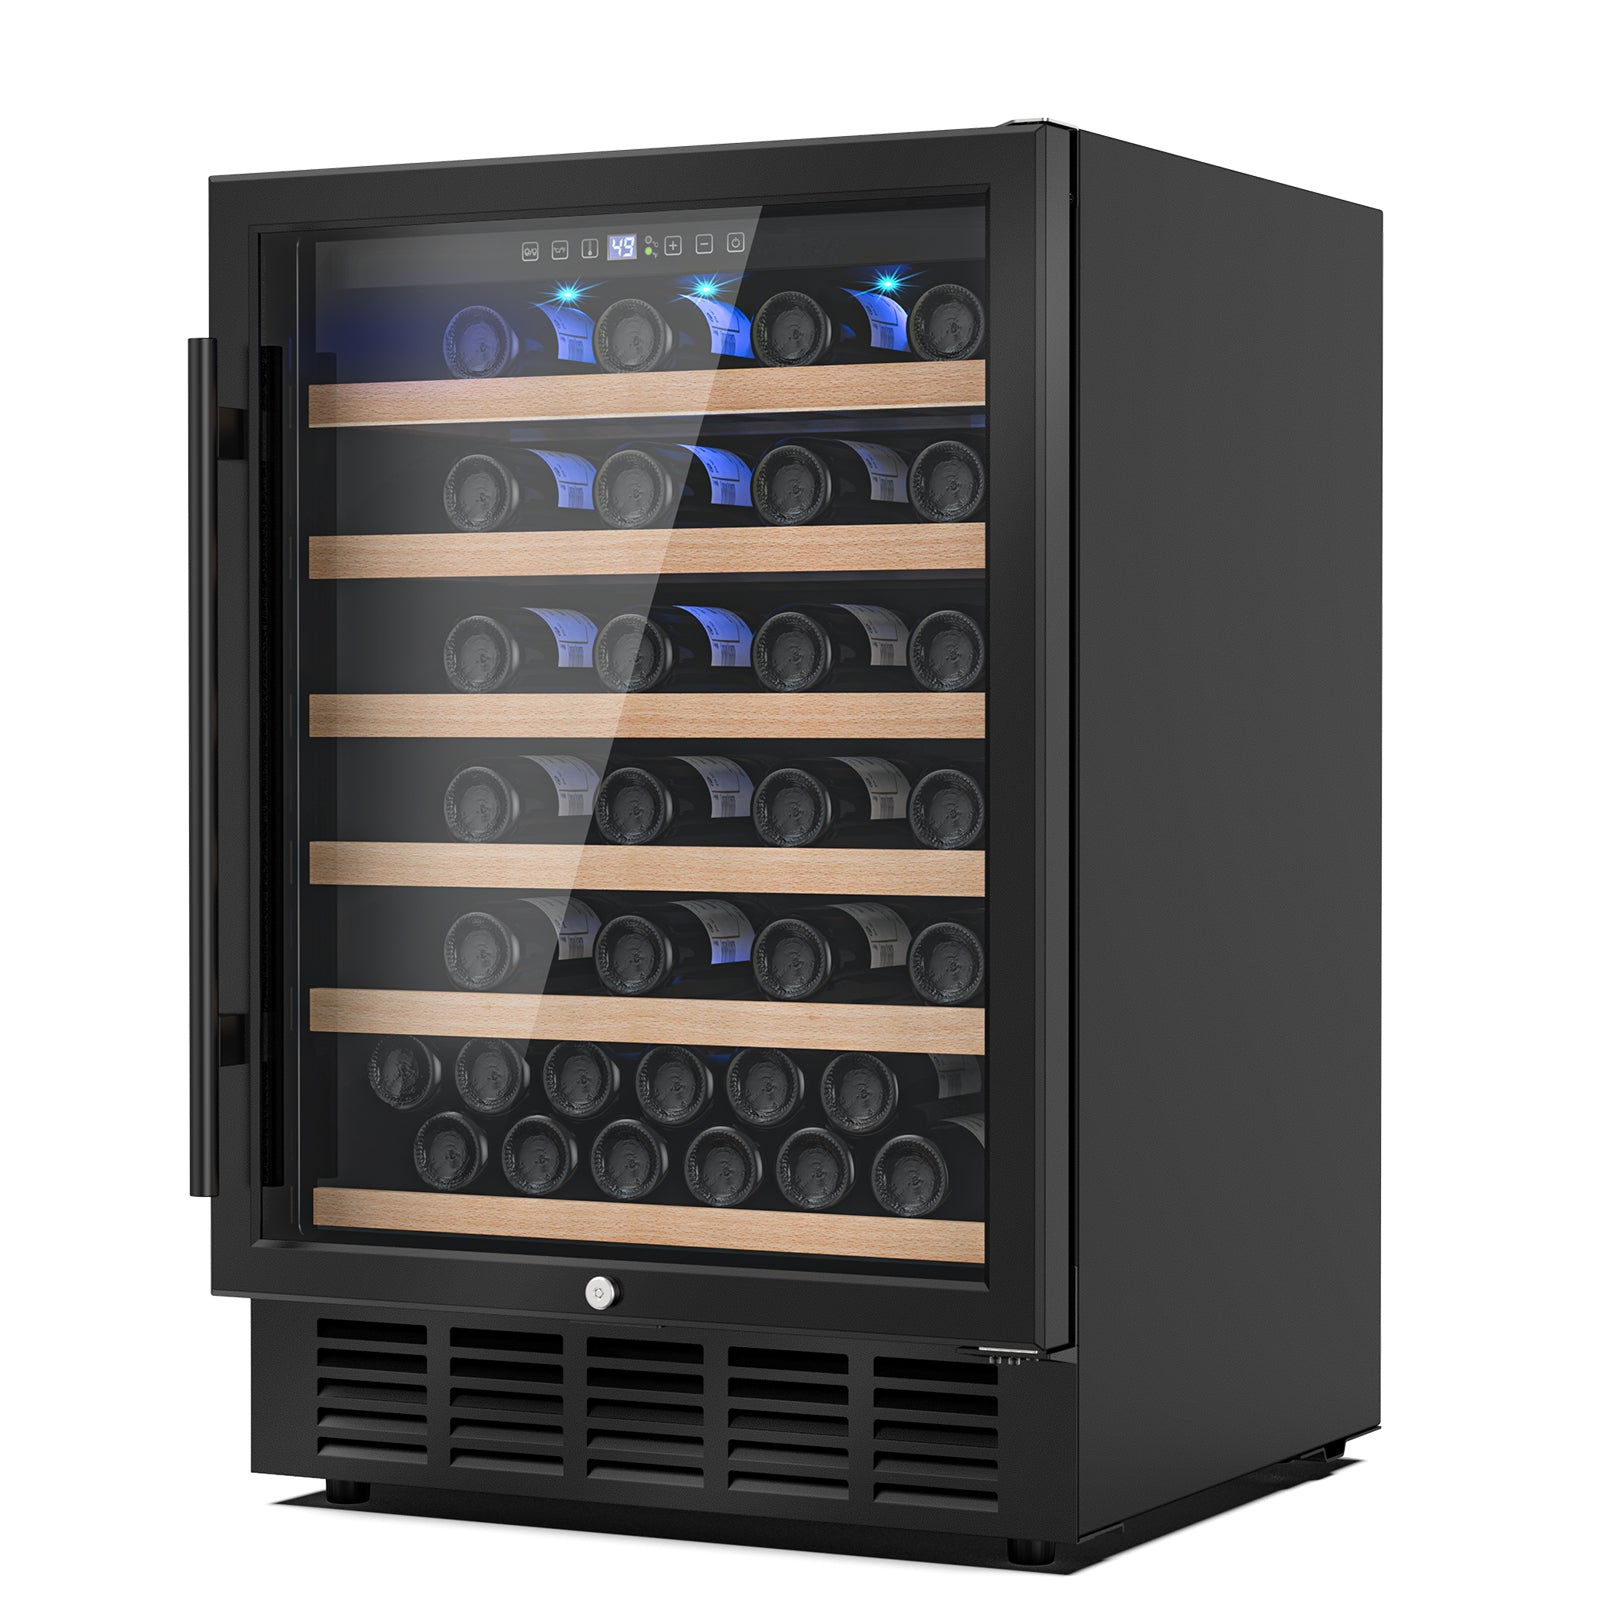 Mojgar 24 Inch Wine Cooler Refrigerator (Single Zone & Black Door)